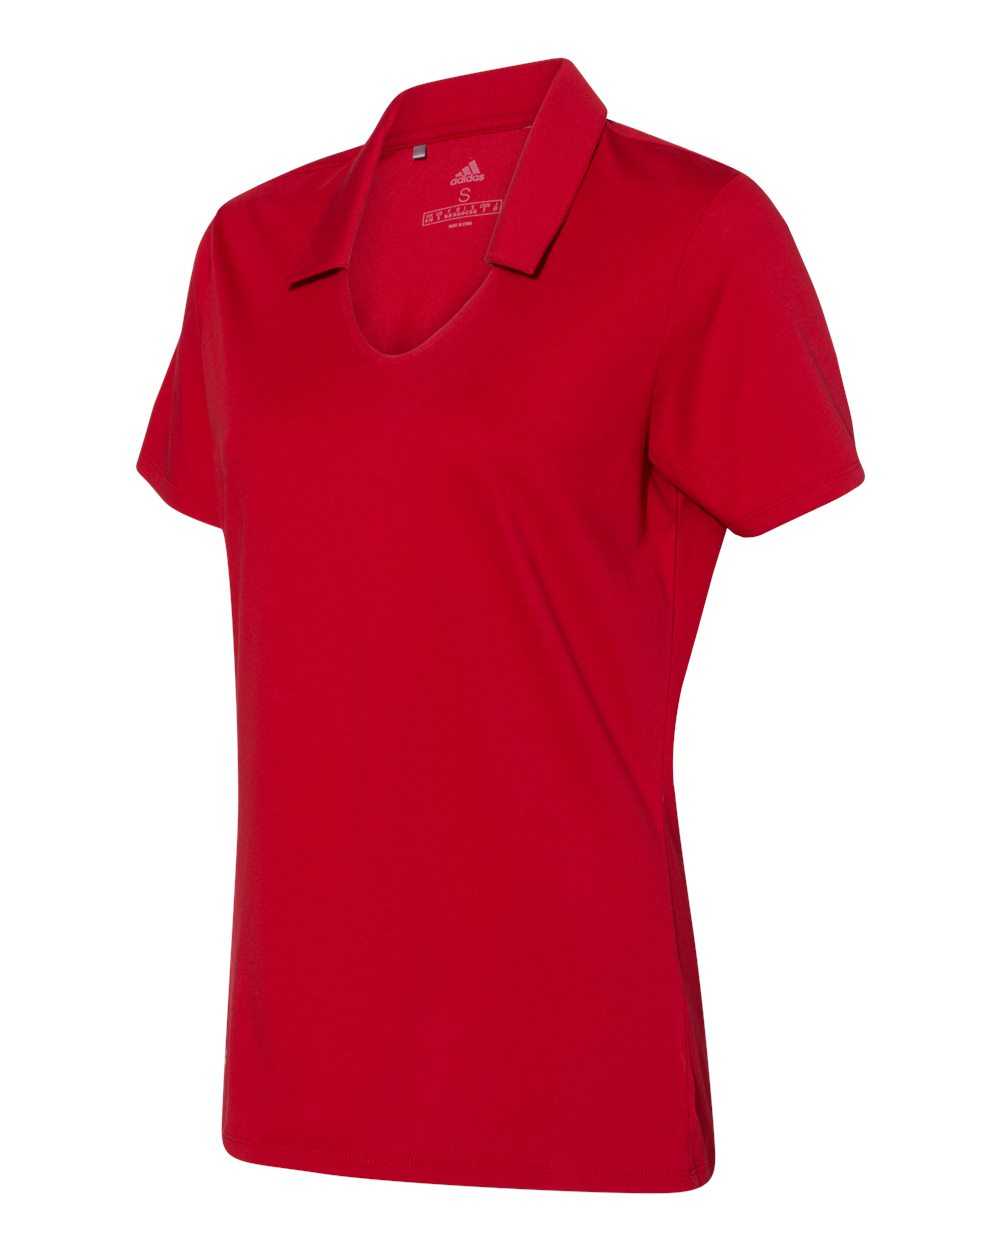 Adidas A323 Women&#39;s Cotton Blend Sport Shirt - Power Red - HIT a Double